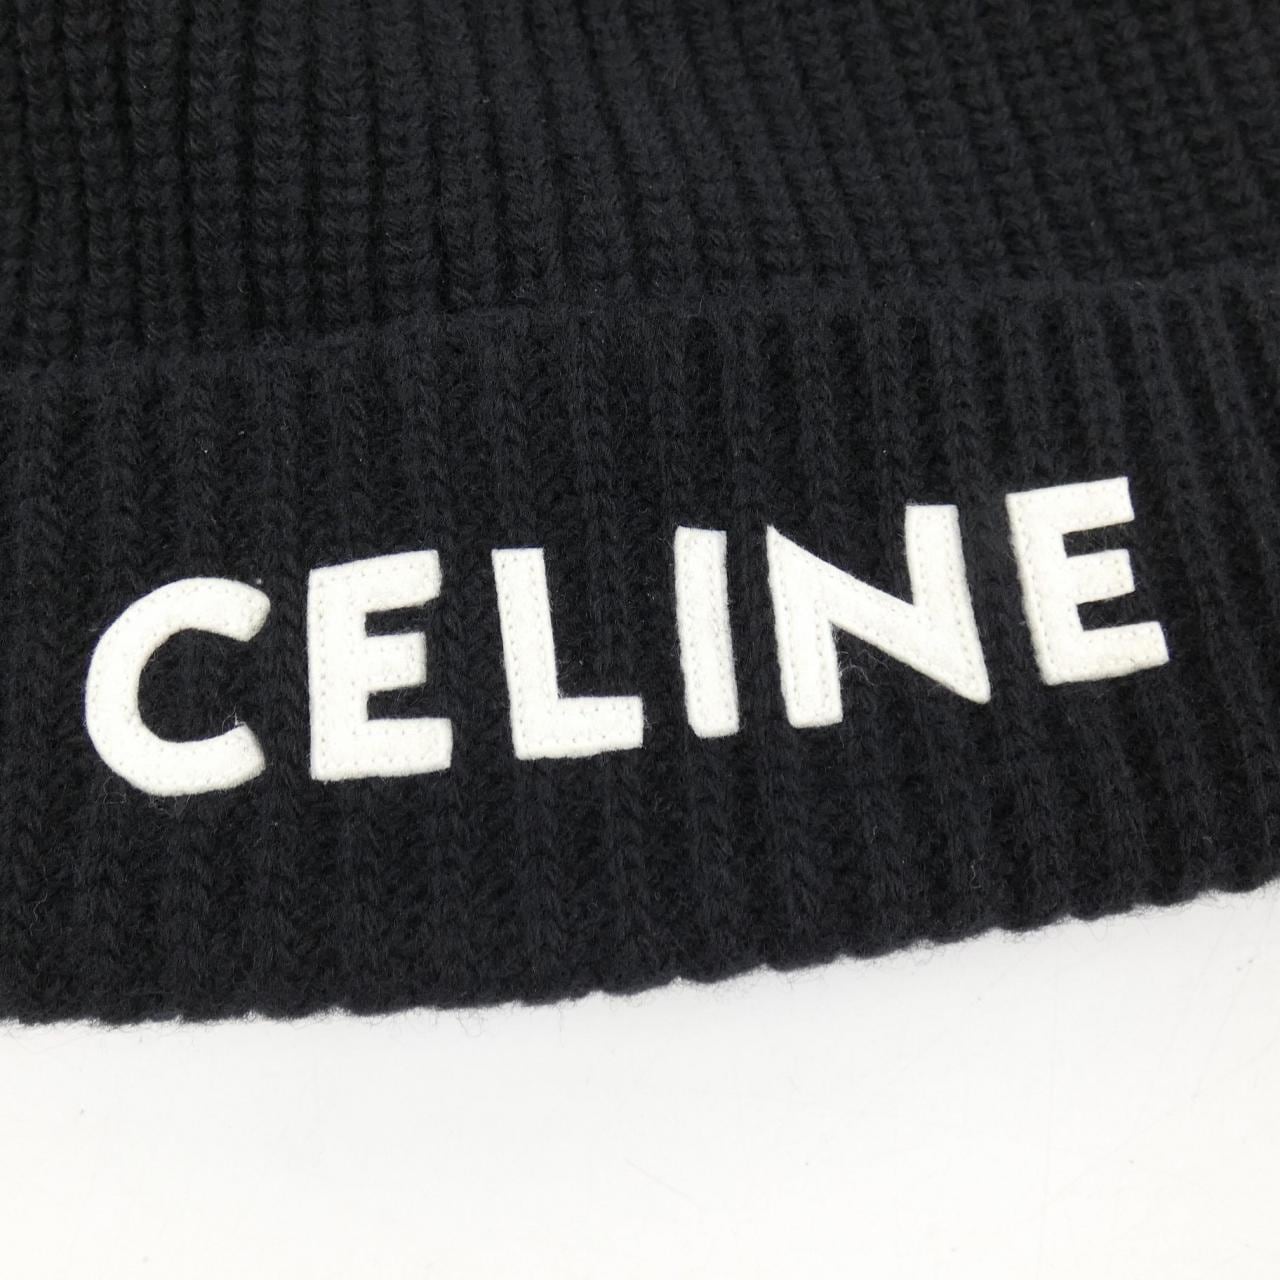 CELINE celine hat